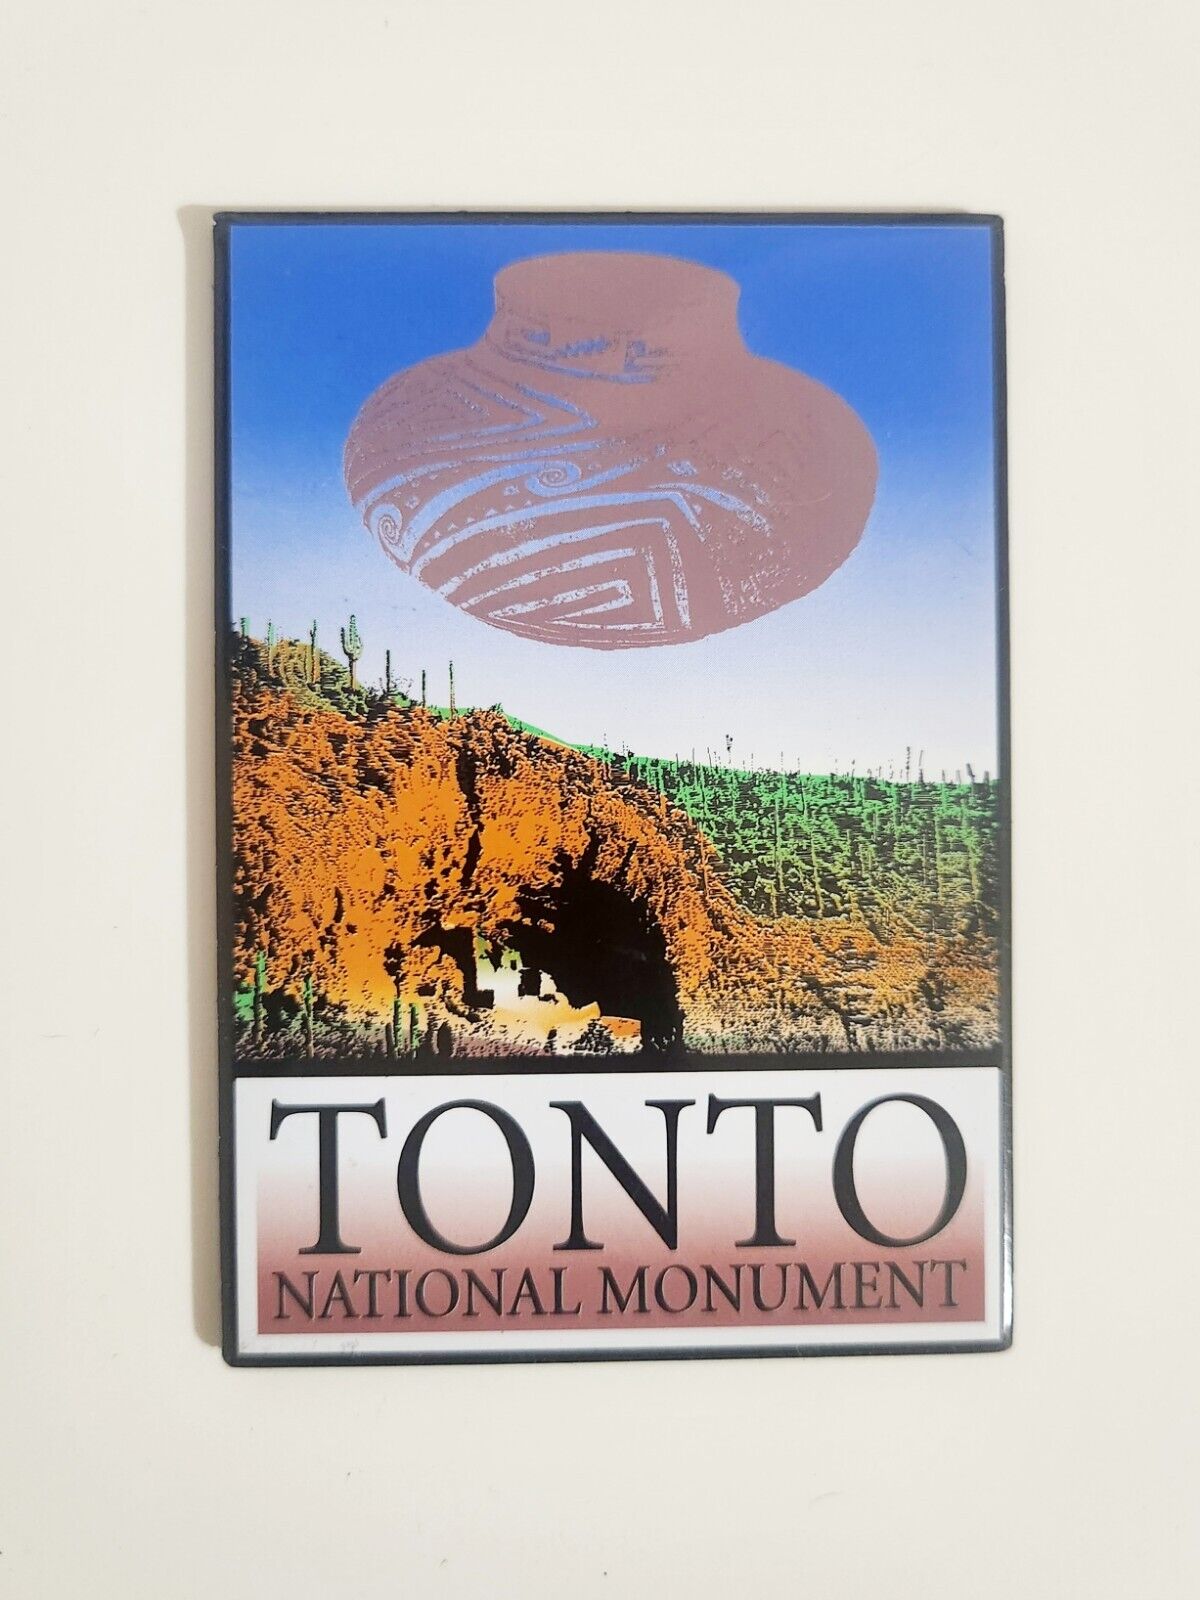 Tonto National Monument Souvenir Tourism Refrigerator Fridge Magnet